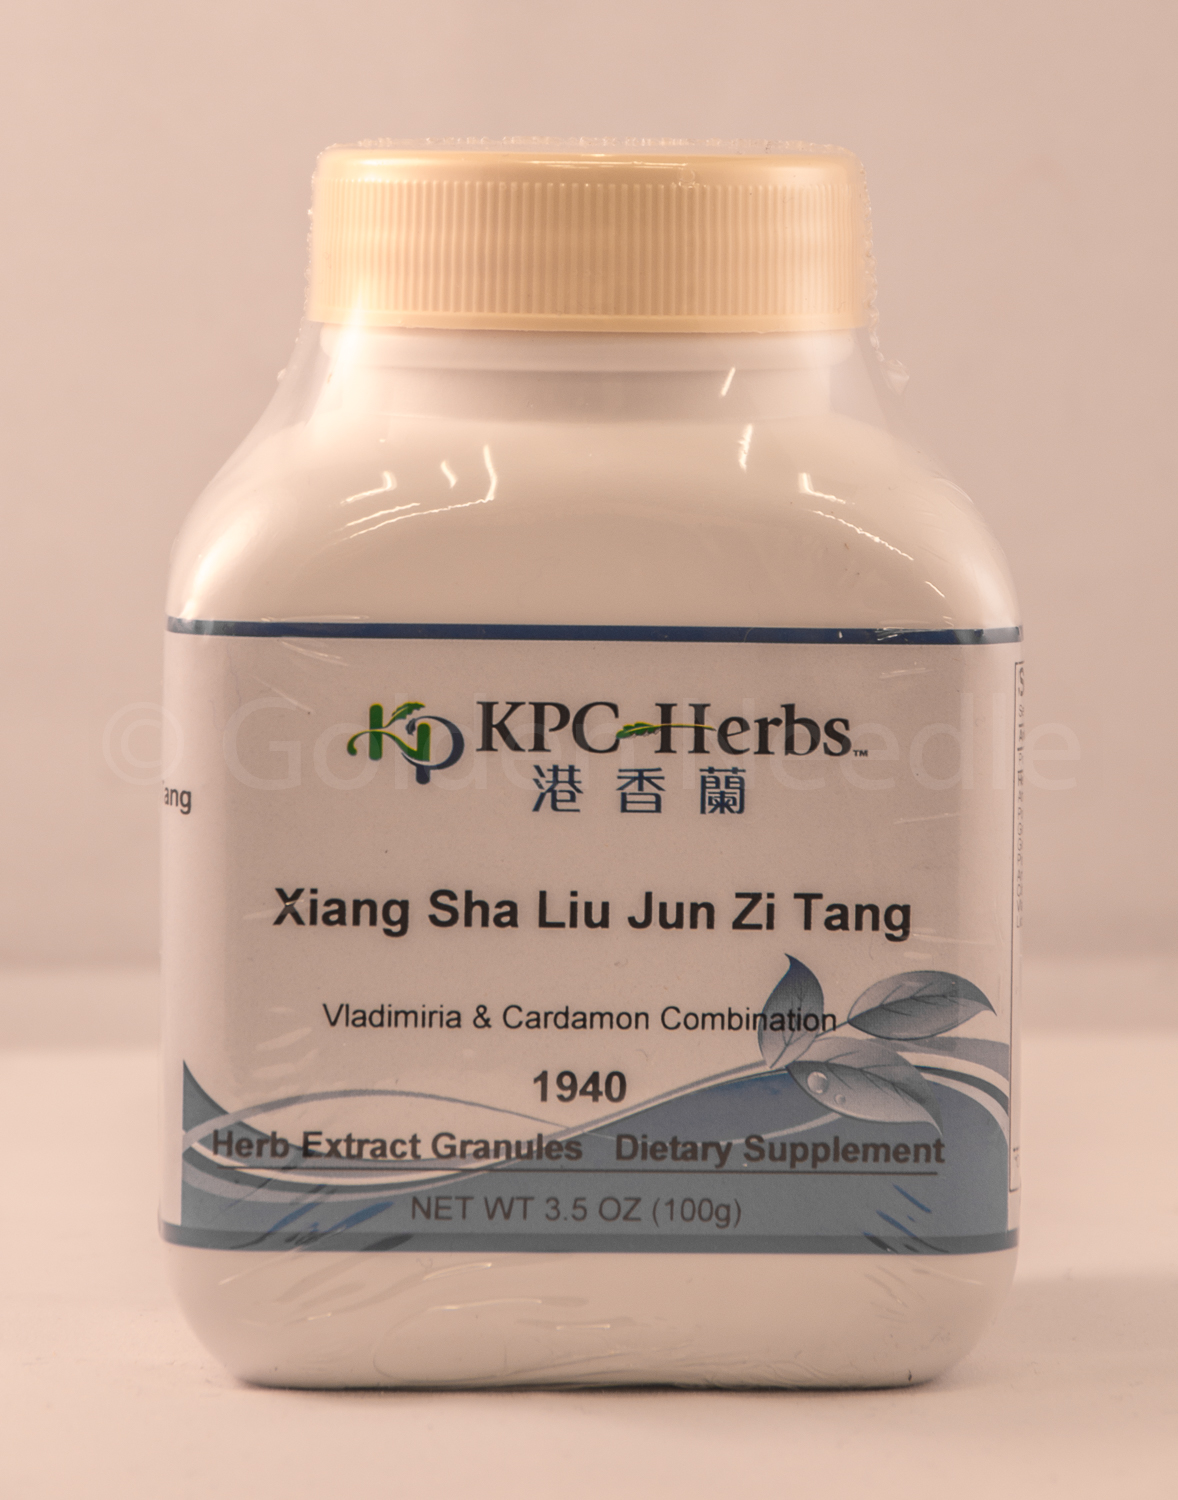 Xiang Sha Liu Jun Zi Tang Granules, 100g